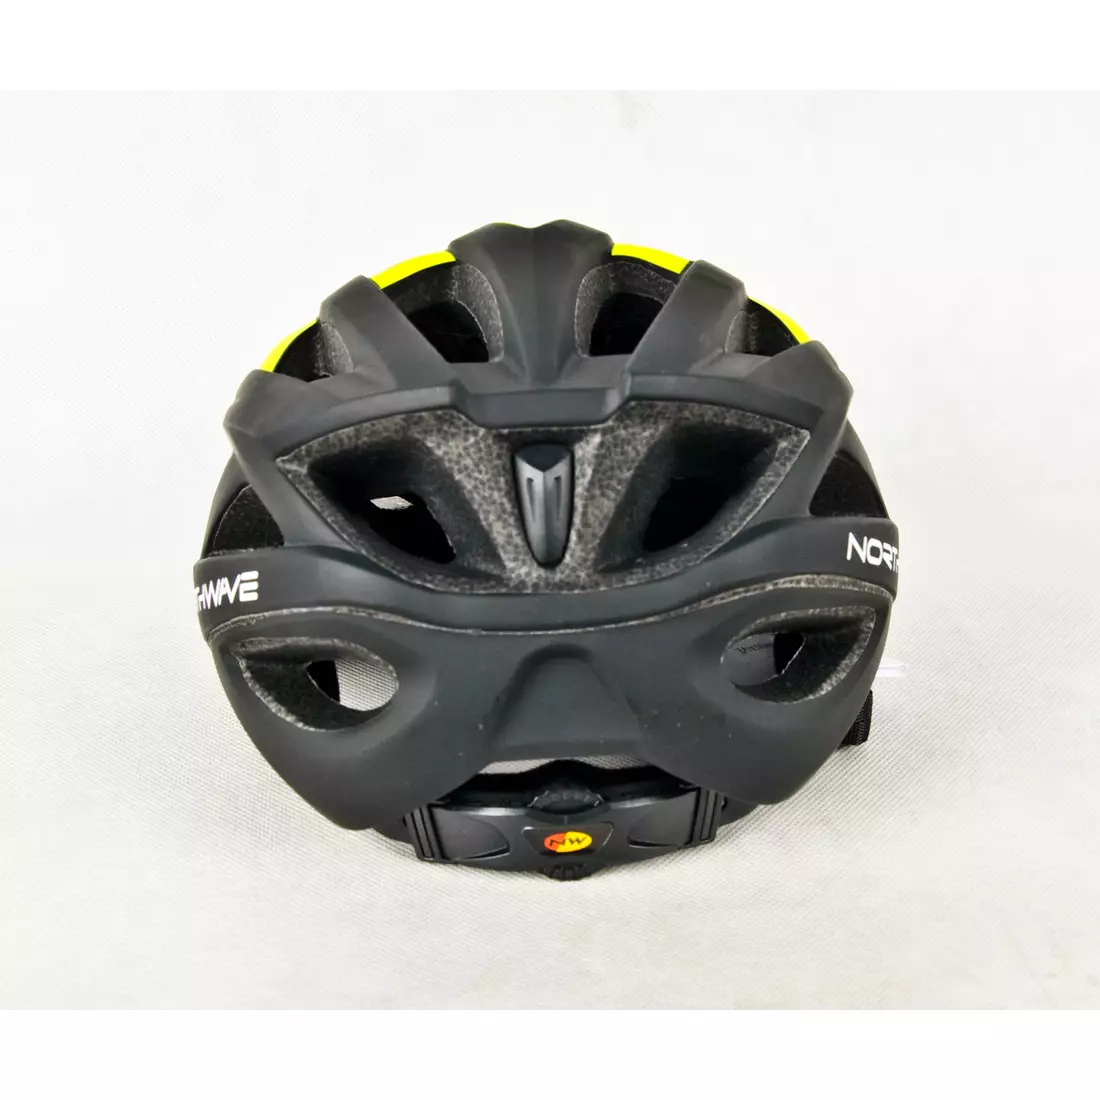 Cyklistická přilba NORTHWAVE RANGER, černá a žlutá